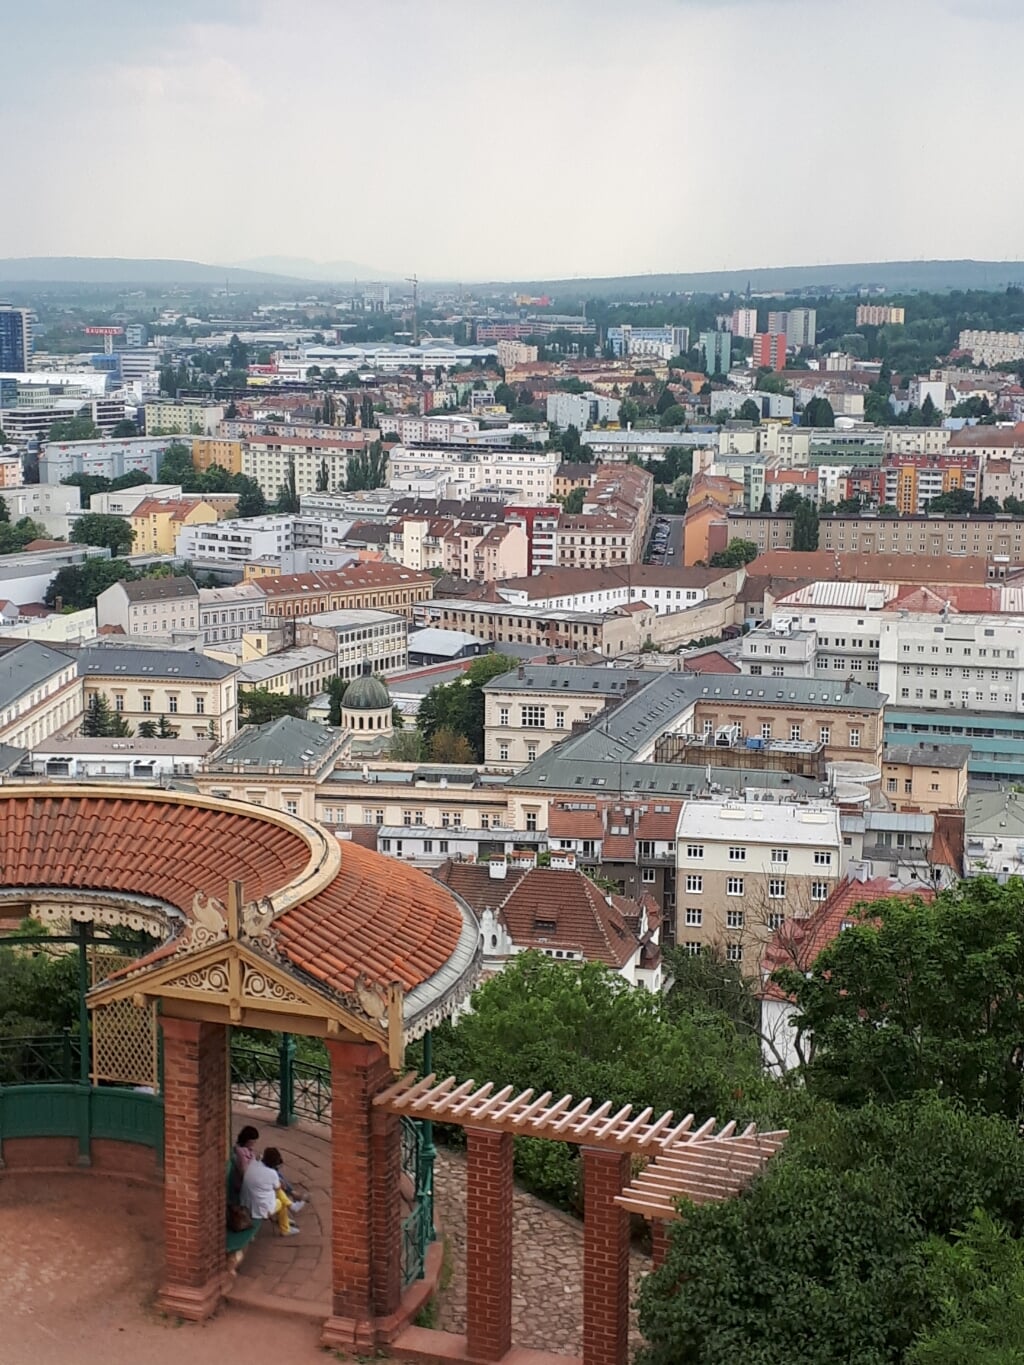 De stad Brno staat te boek als het Rotterdam van Tsjechië, omdat er veel industrie gevestigd is.